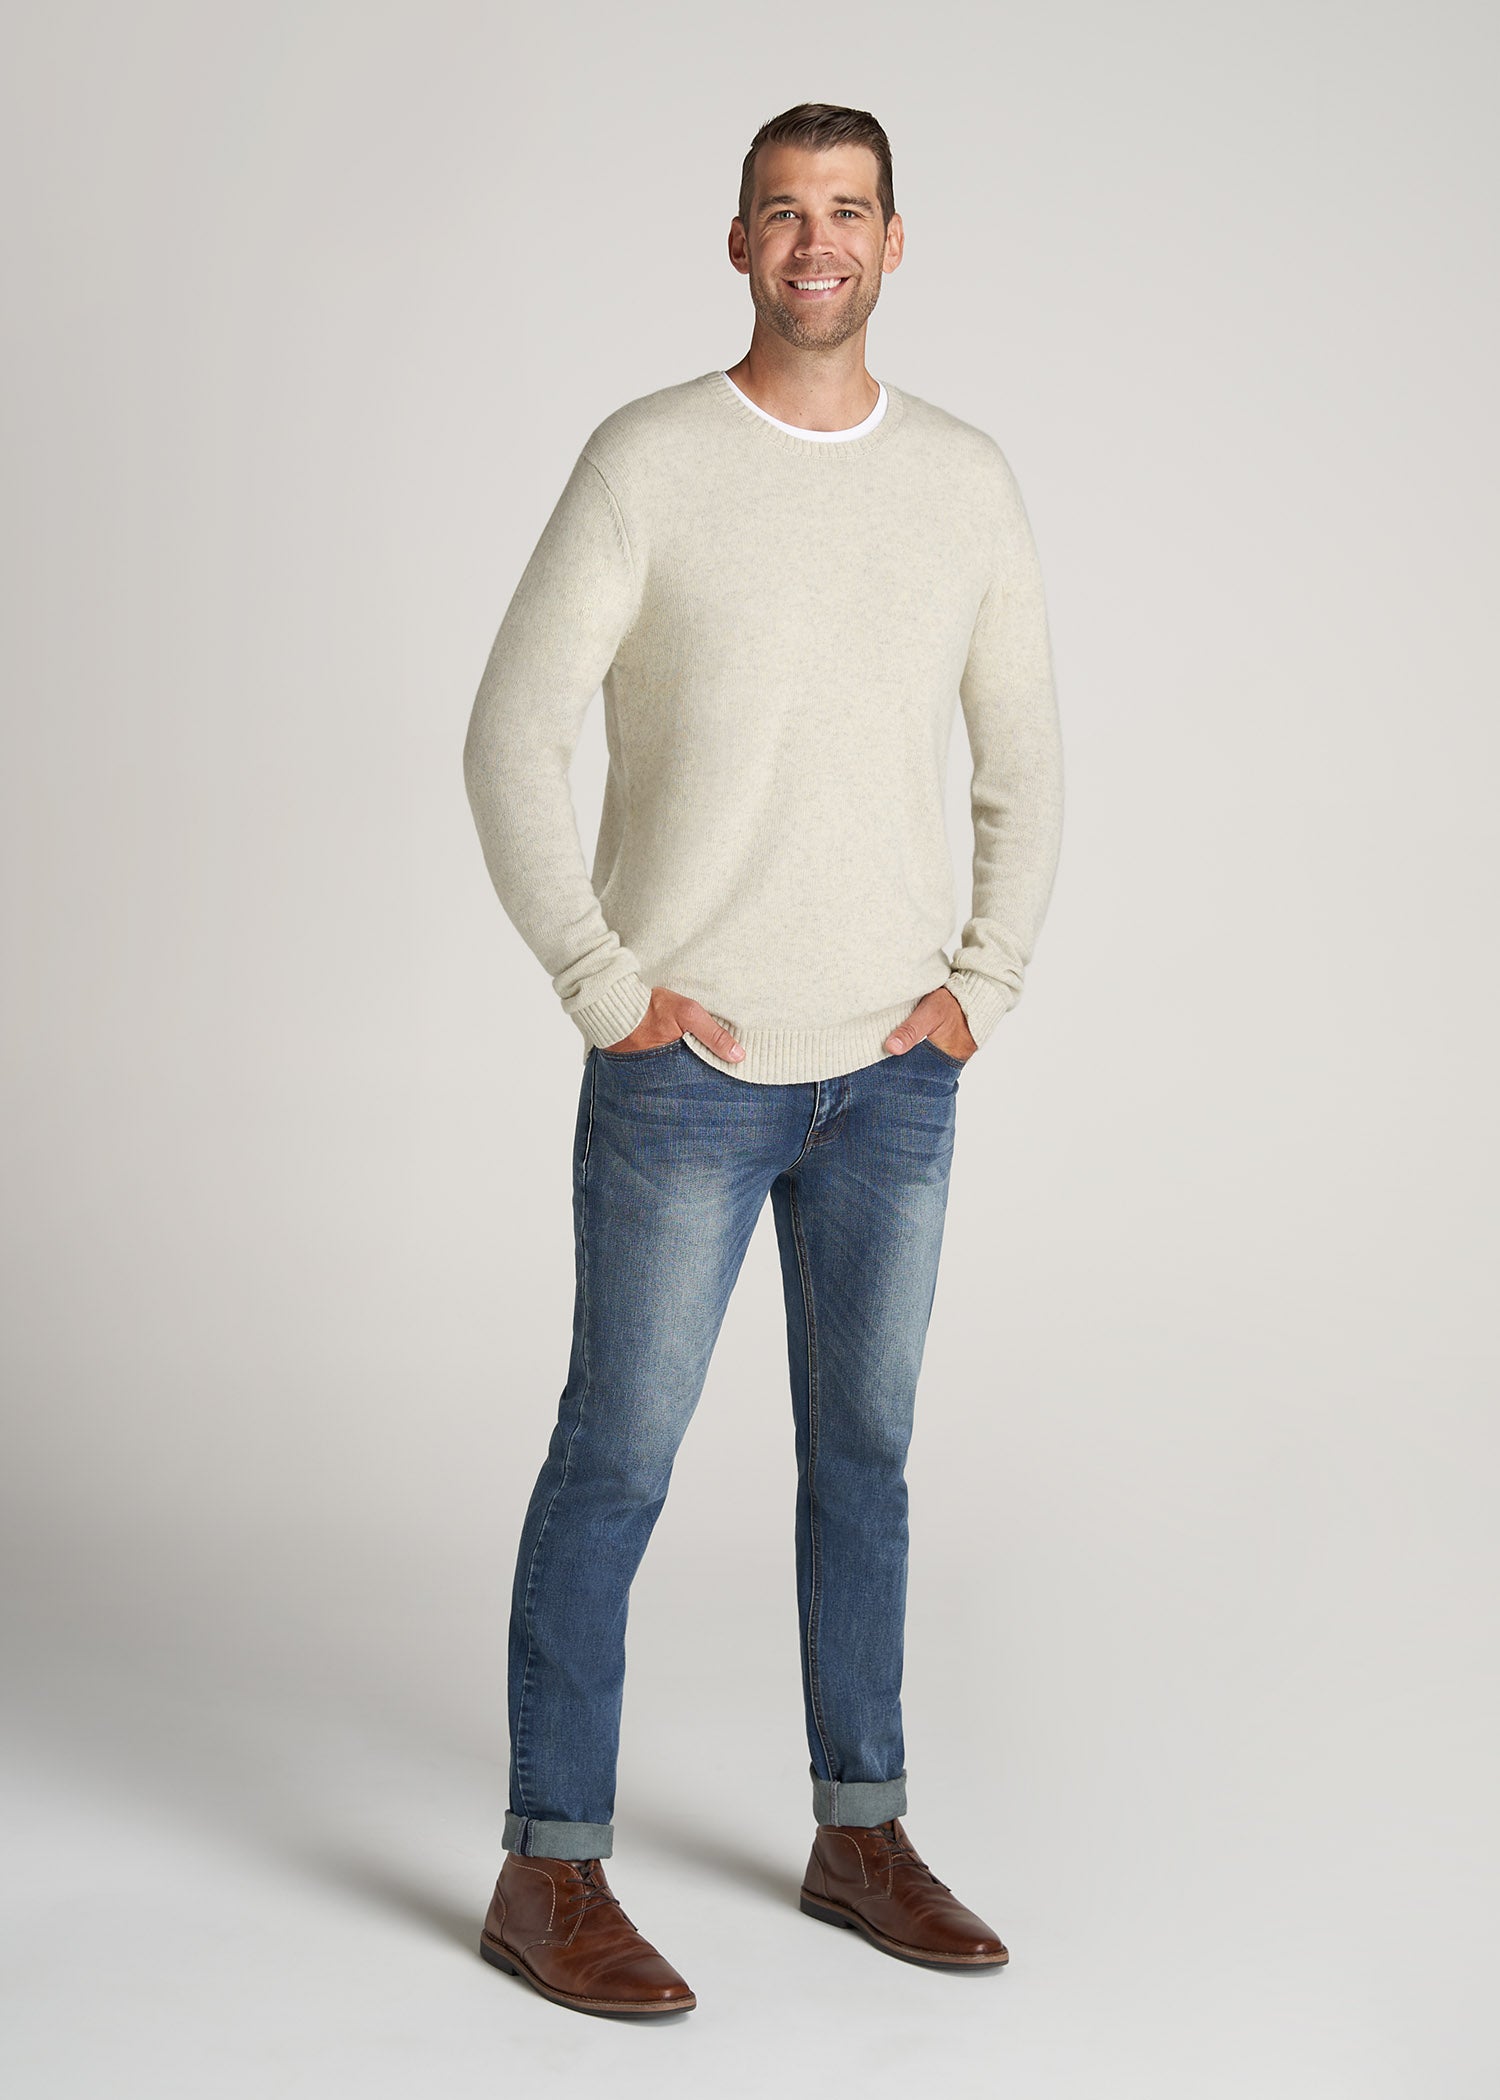 American-Tall-Men-LJ-Wool-Sweater-StoneMix-full